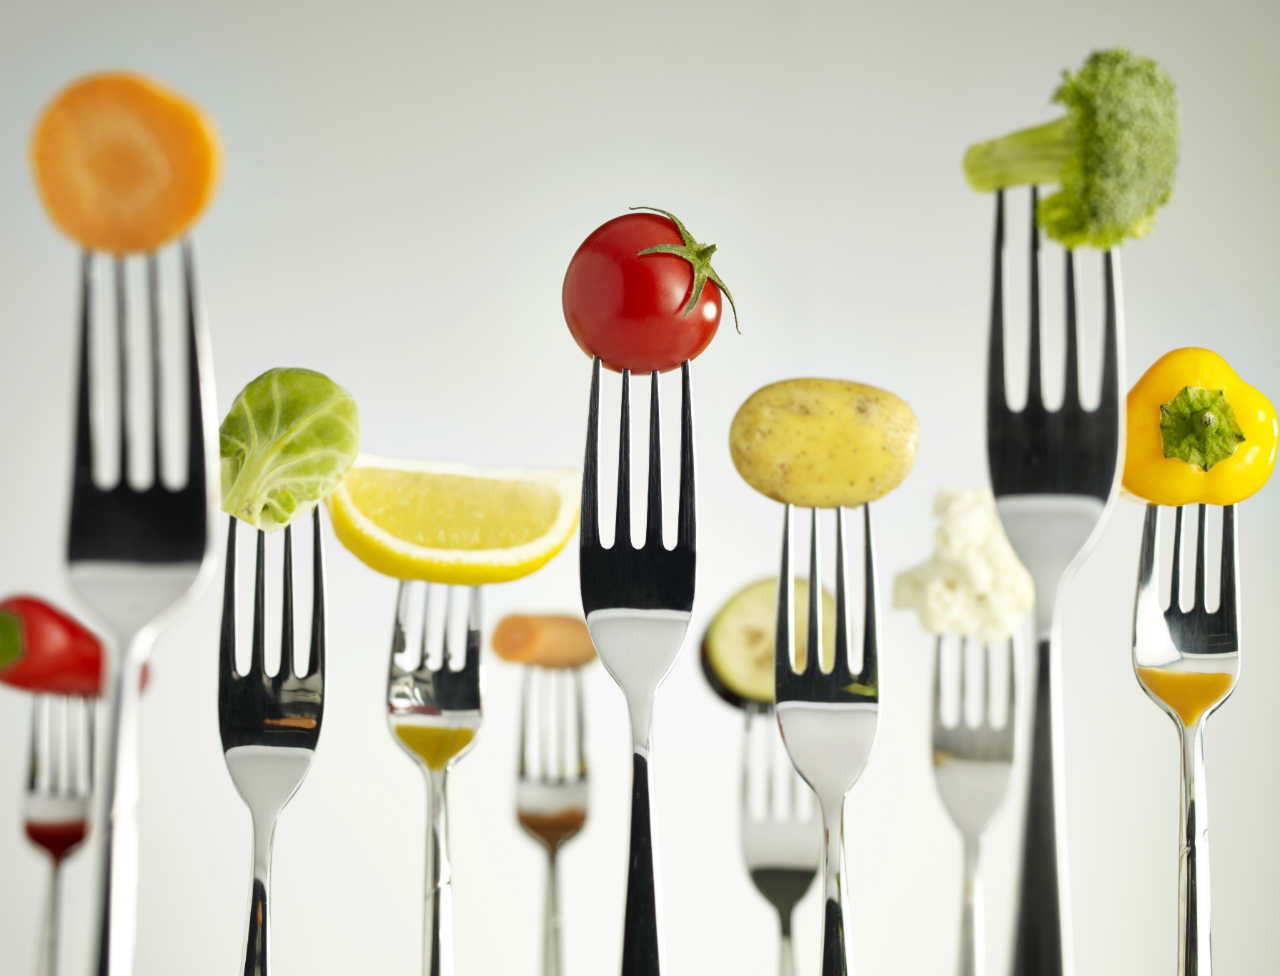 Quelques idées consommer 5 fruits et légumes par jour